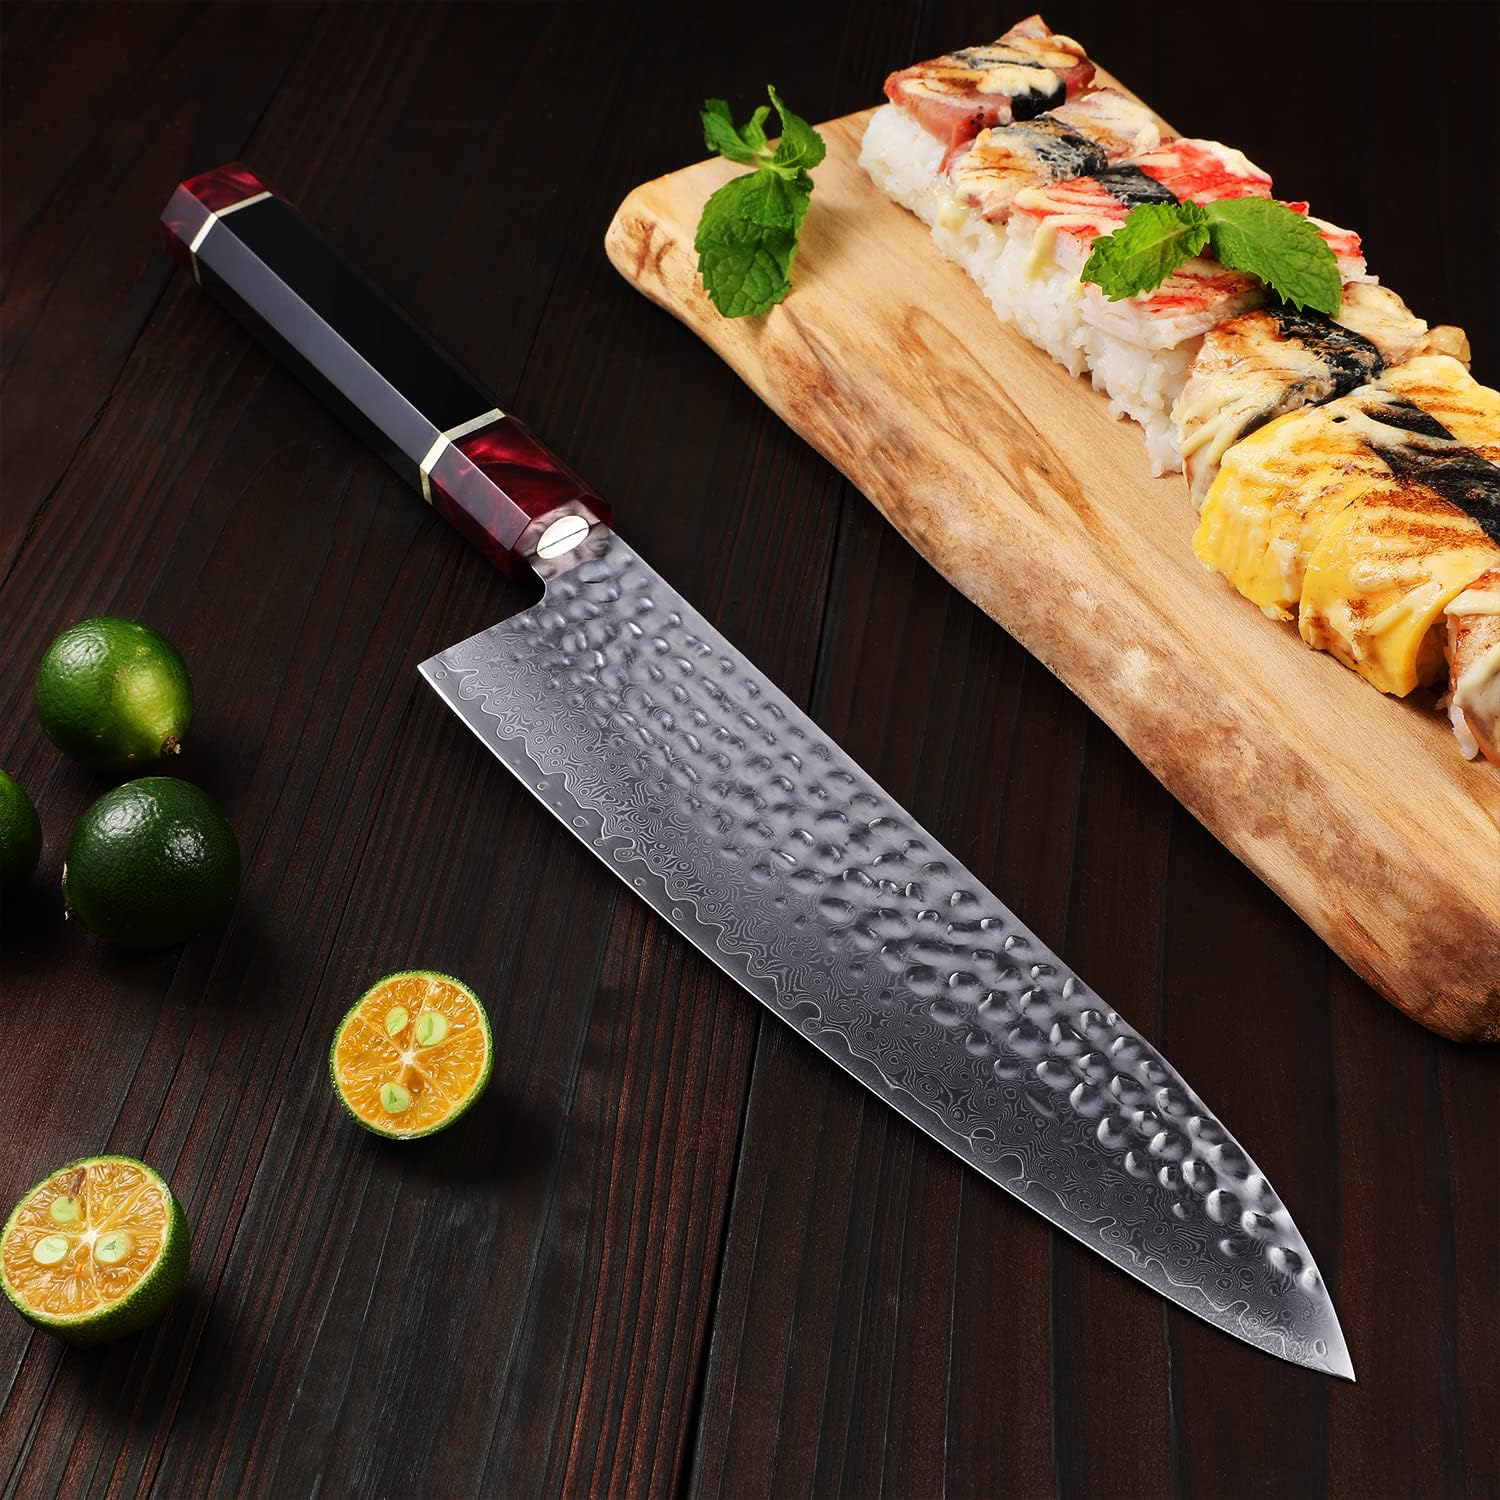 Grandsharp Professional Damascus Steel Kitchen Chef Knifes Aus10